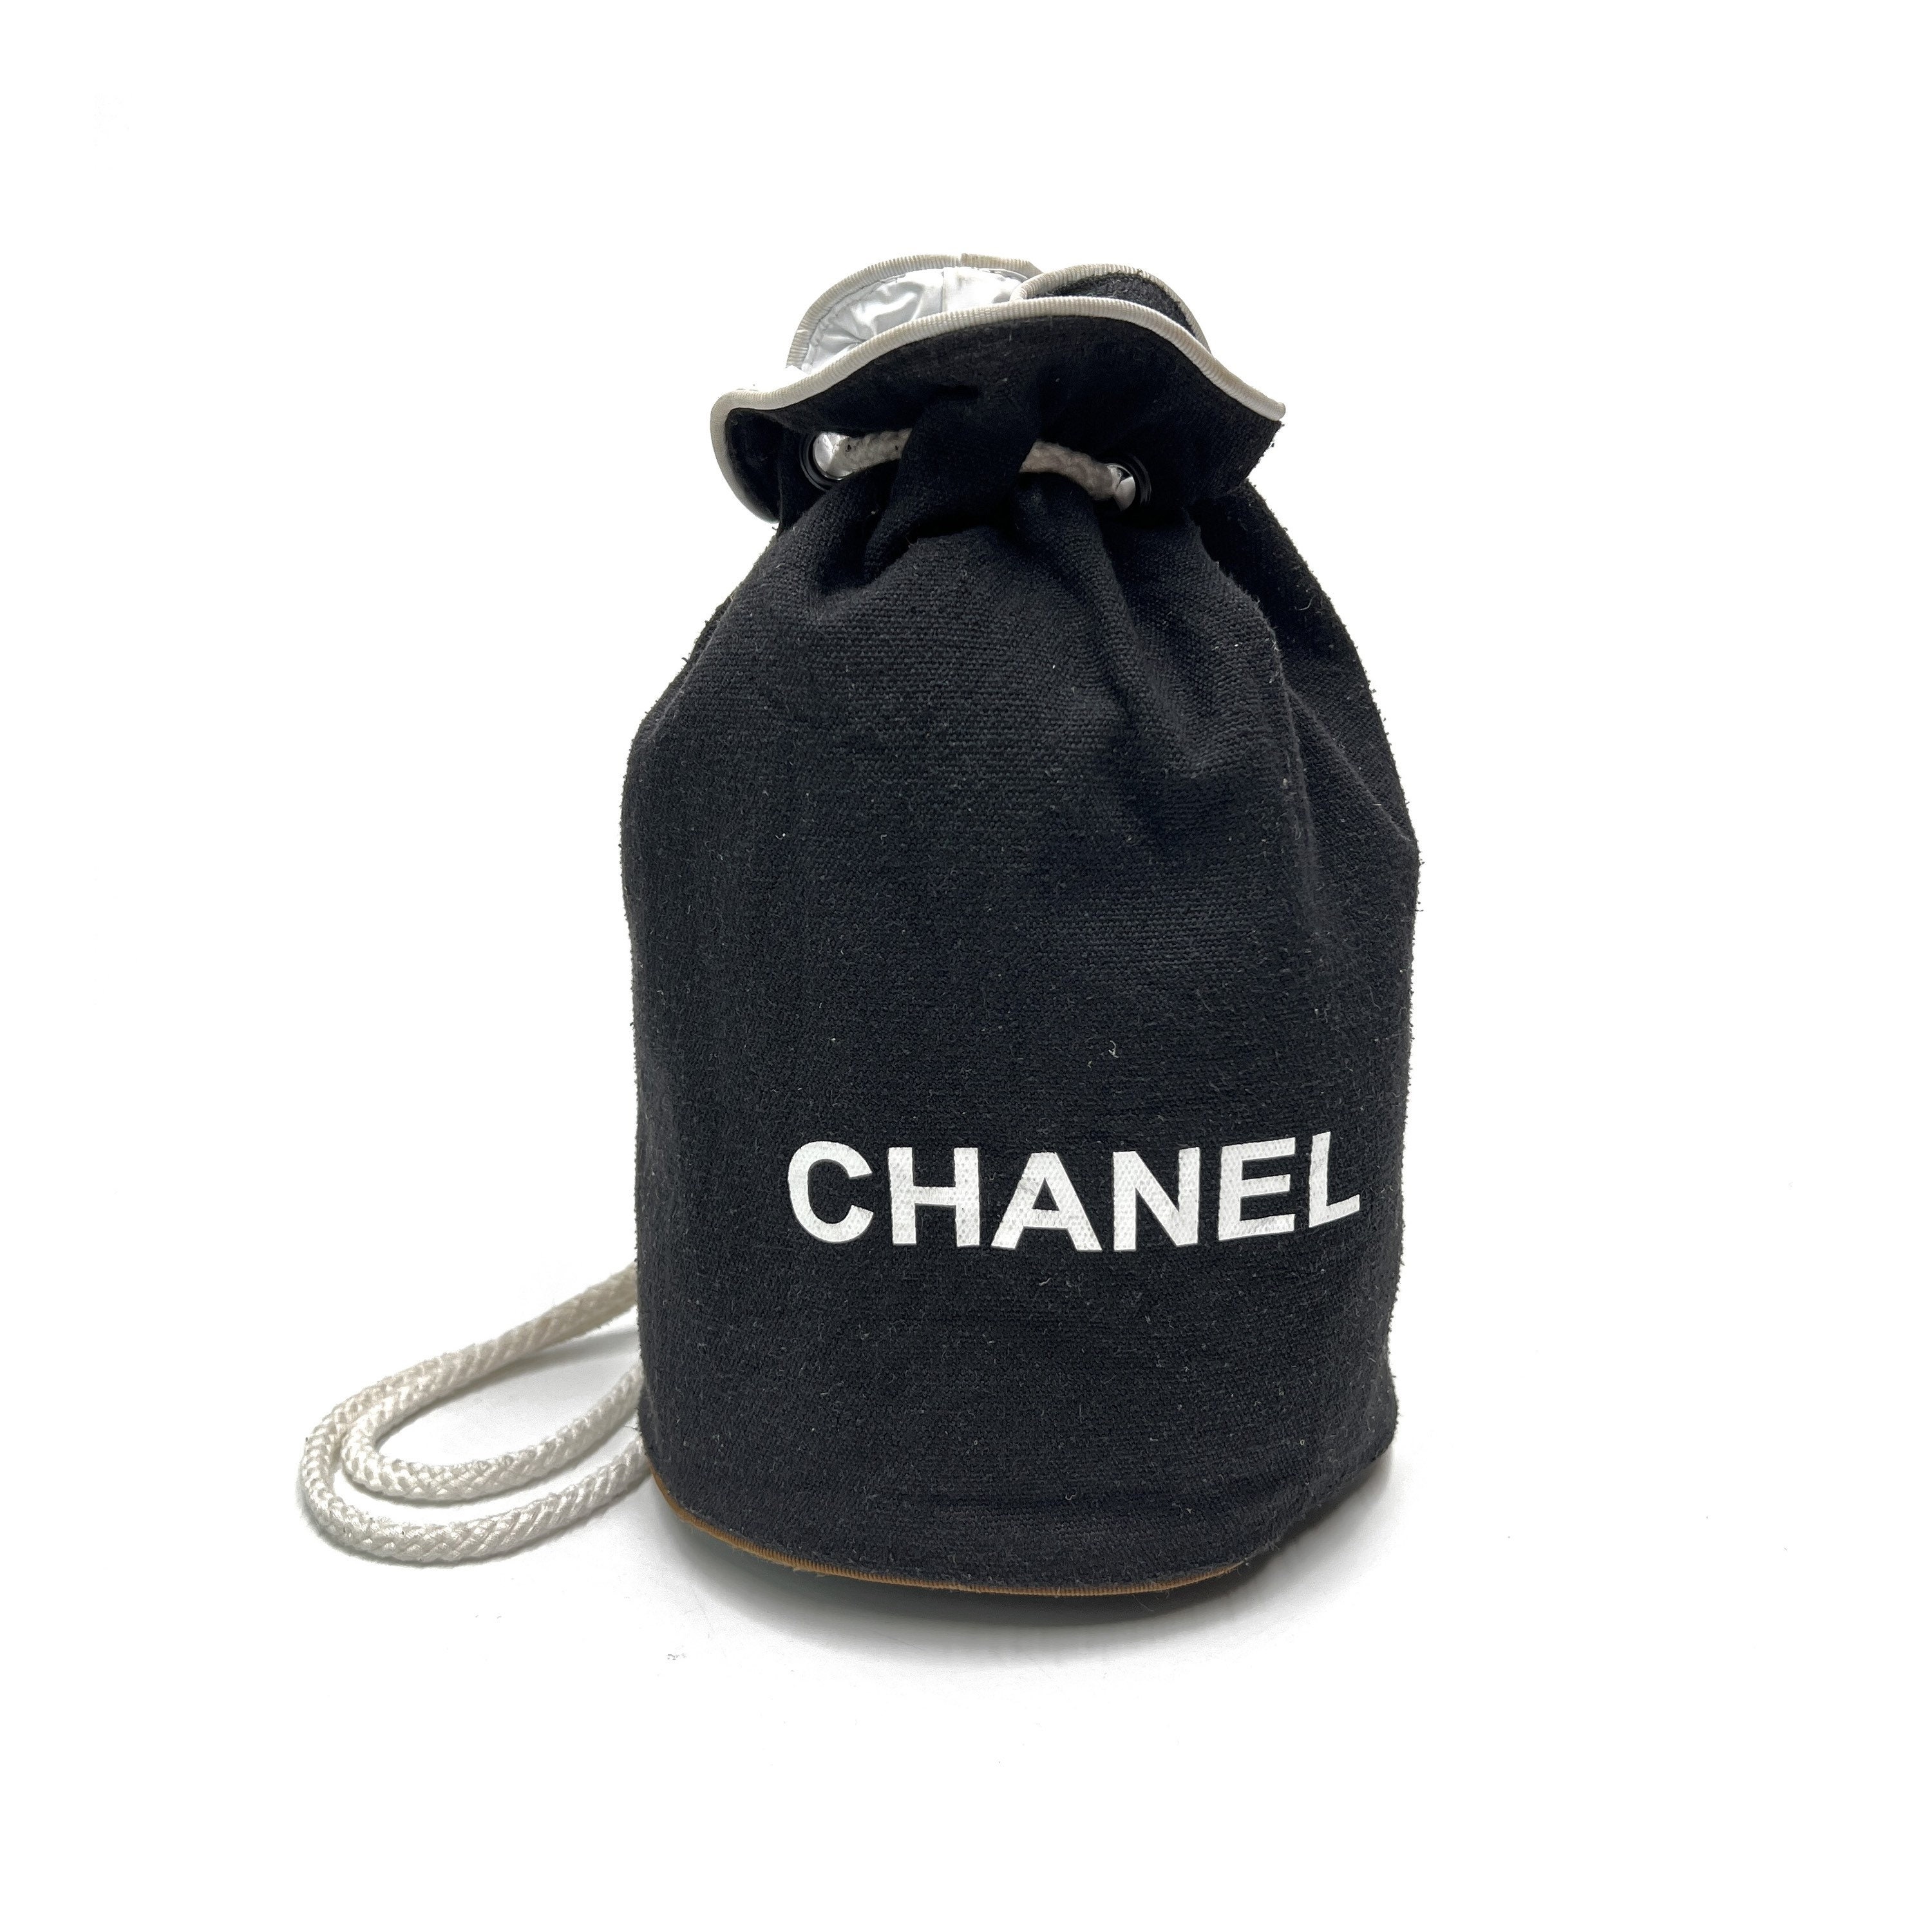 Chanel beauty cosmetic bag